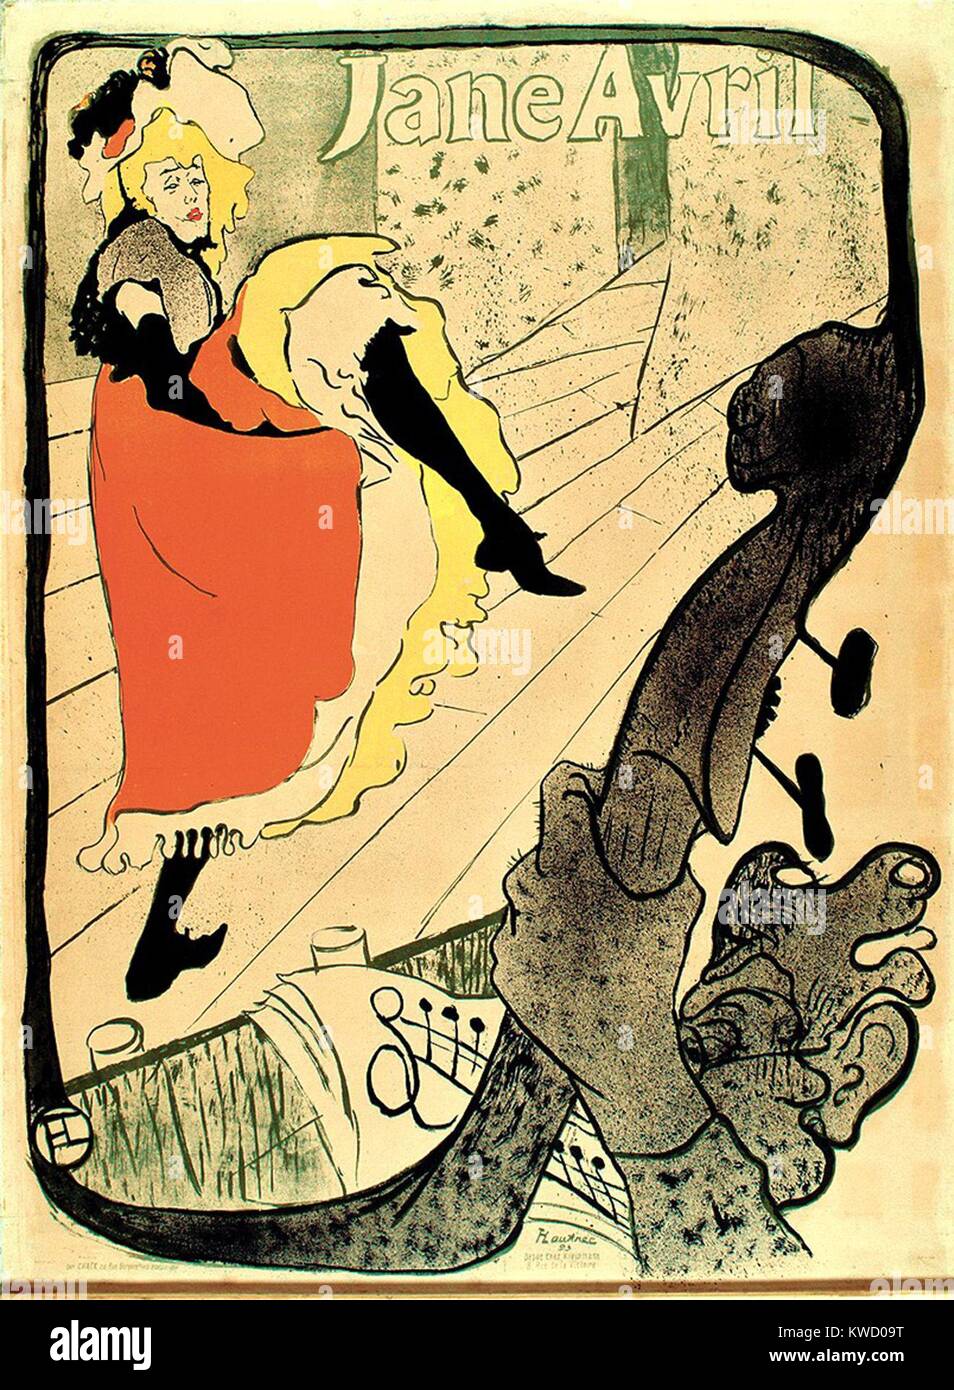 Jane Avril, por Henri de Toulouse-Lautrec, 1893, Francés postimpresionista, litografía de impresión. Avril, amigo del artista, encargó esta impresión para anunciar su espectáculo de cabaret en el Jardin de Paris (BSLOC 2017 5 65) Foto de stock